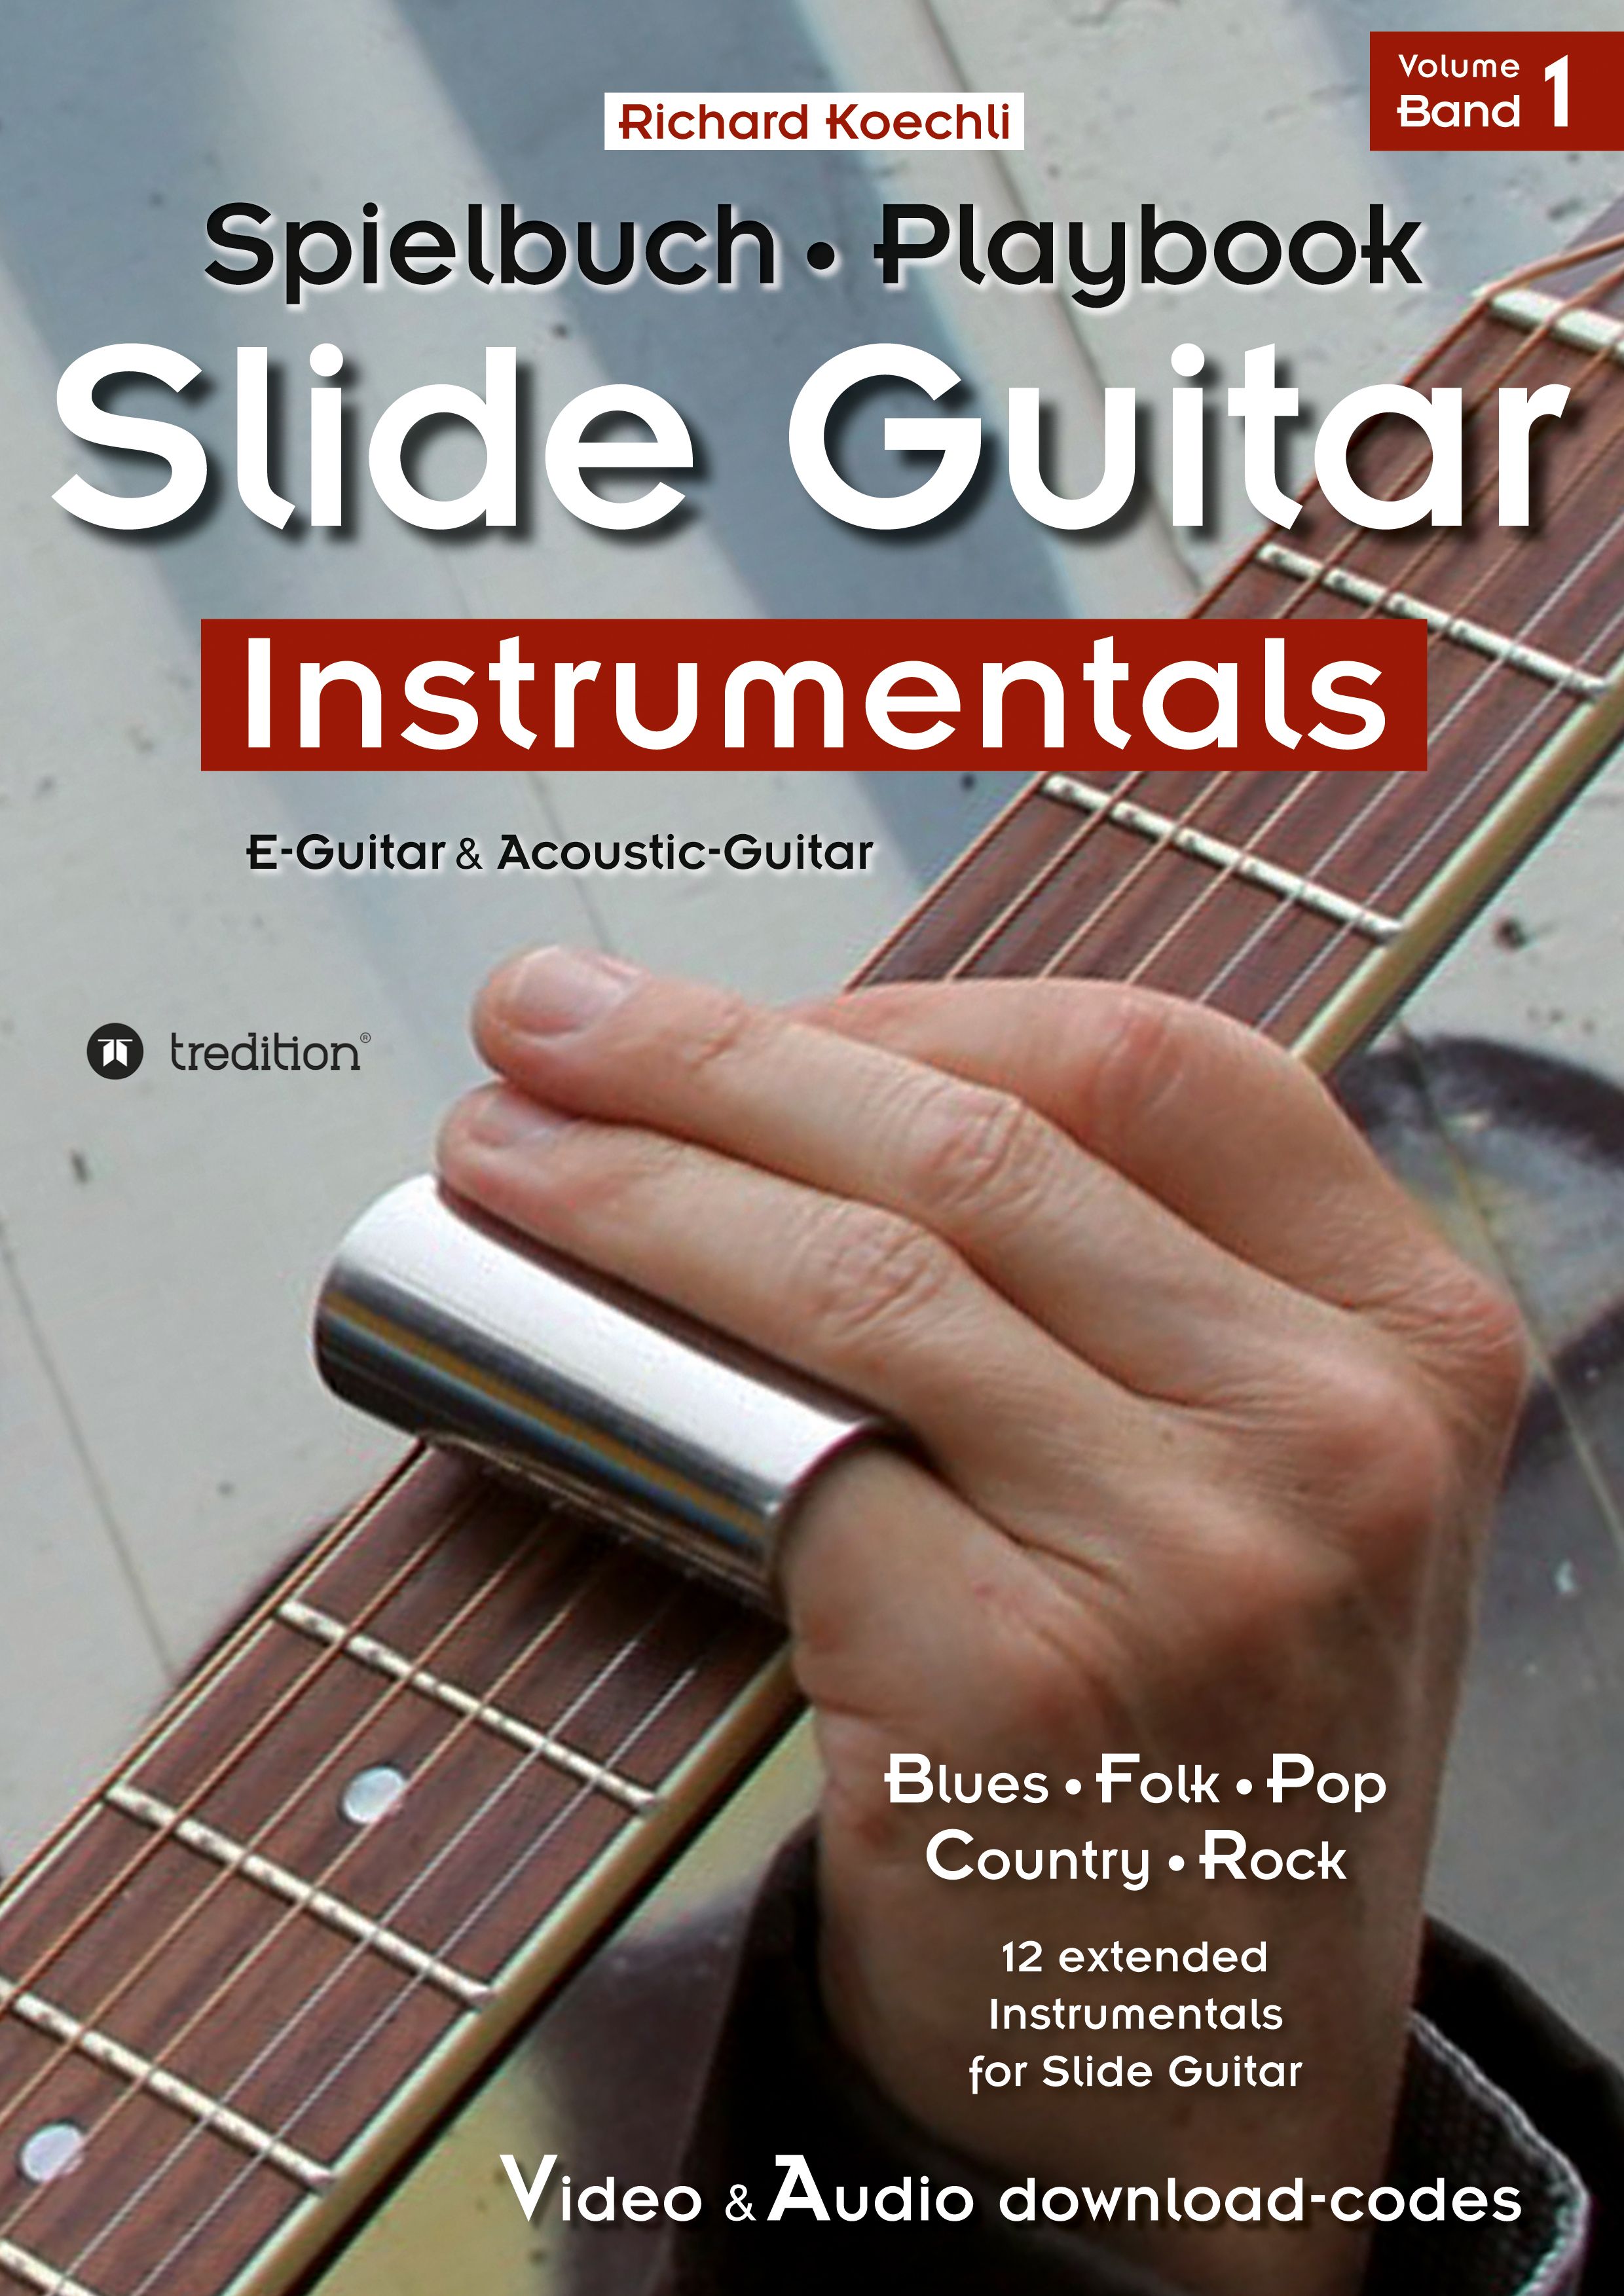 Slide Guitar Instrumentals - das Spielbuch, the Playbook